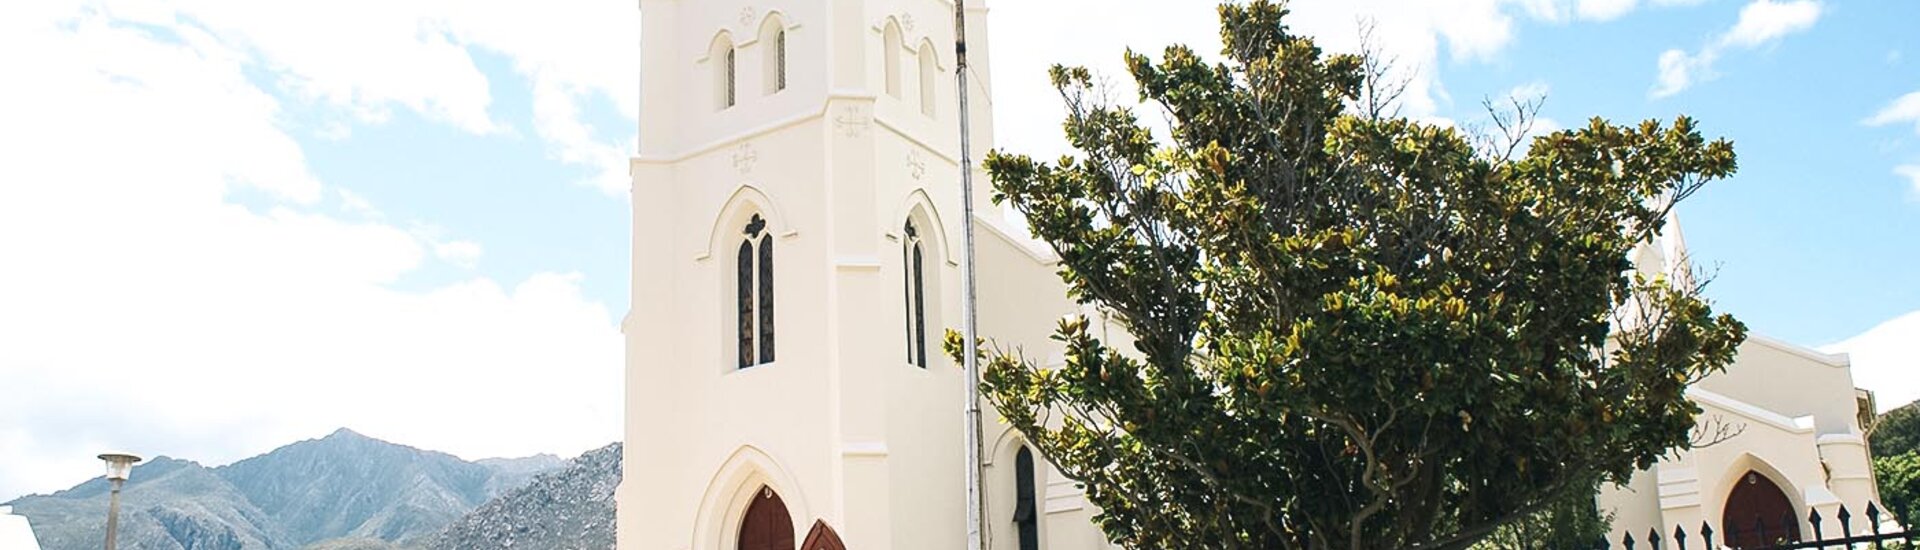 Die Kirche von Montagu, Südafrika